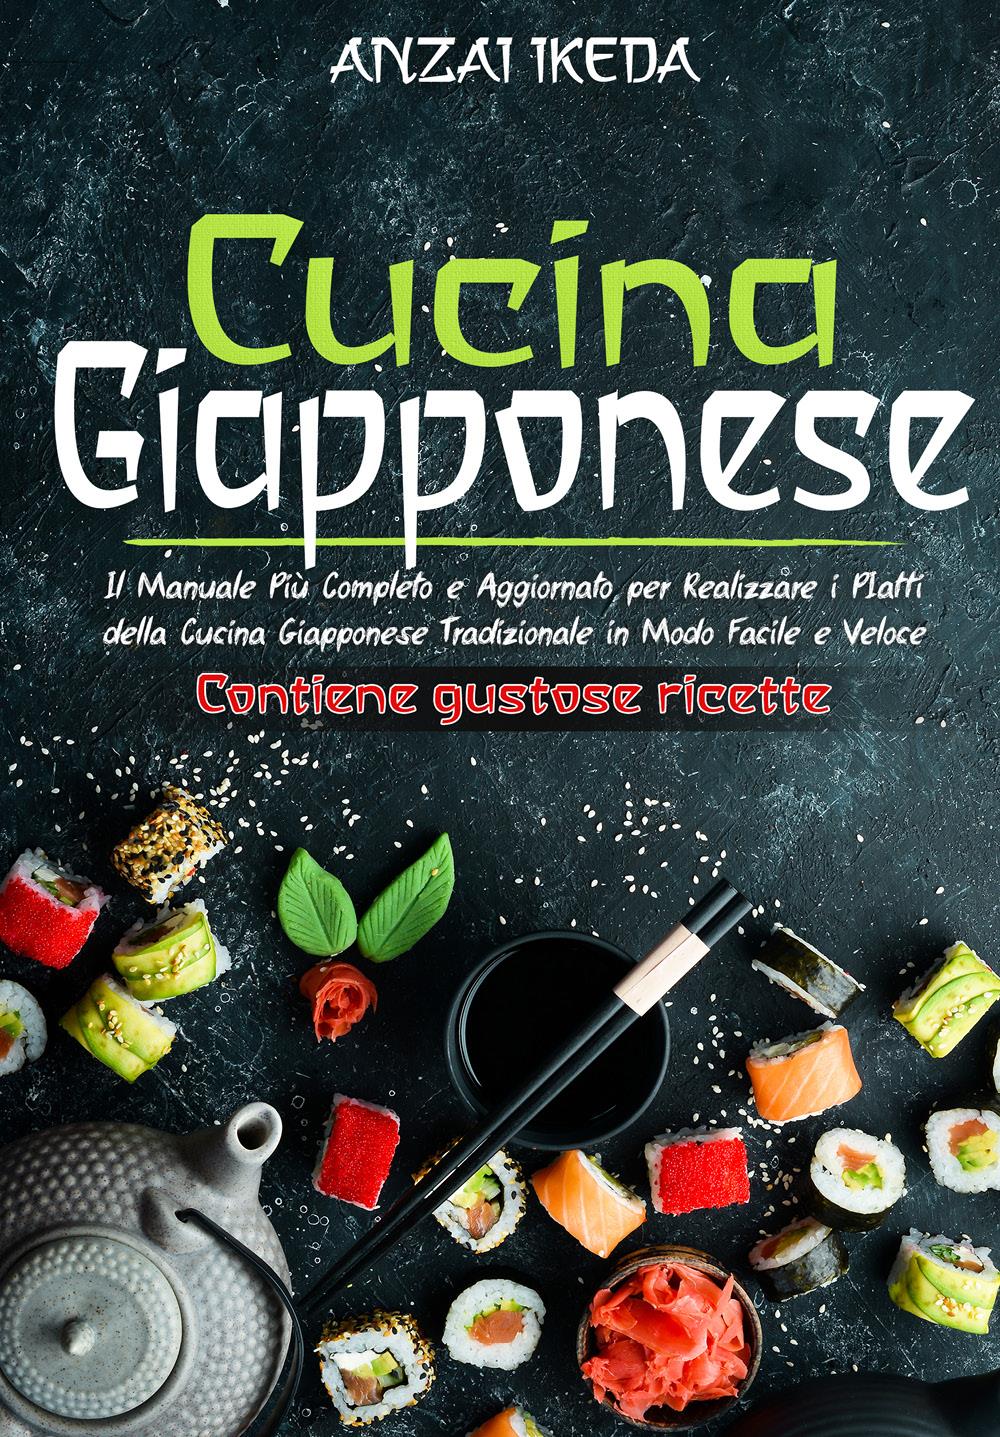 CUCINA GIAPPONESE: Il manuale più completo e aggiornato per realizzare i piatti della cucina giapponese tradizionale in modo facile e veloce. CONTIENE GUSTOSE RICETTE!